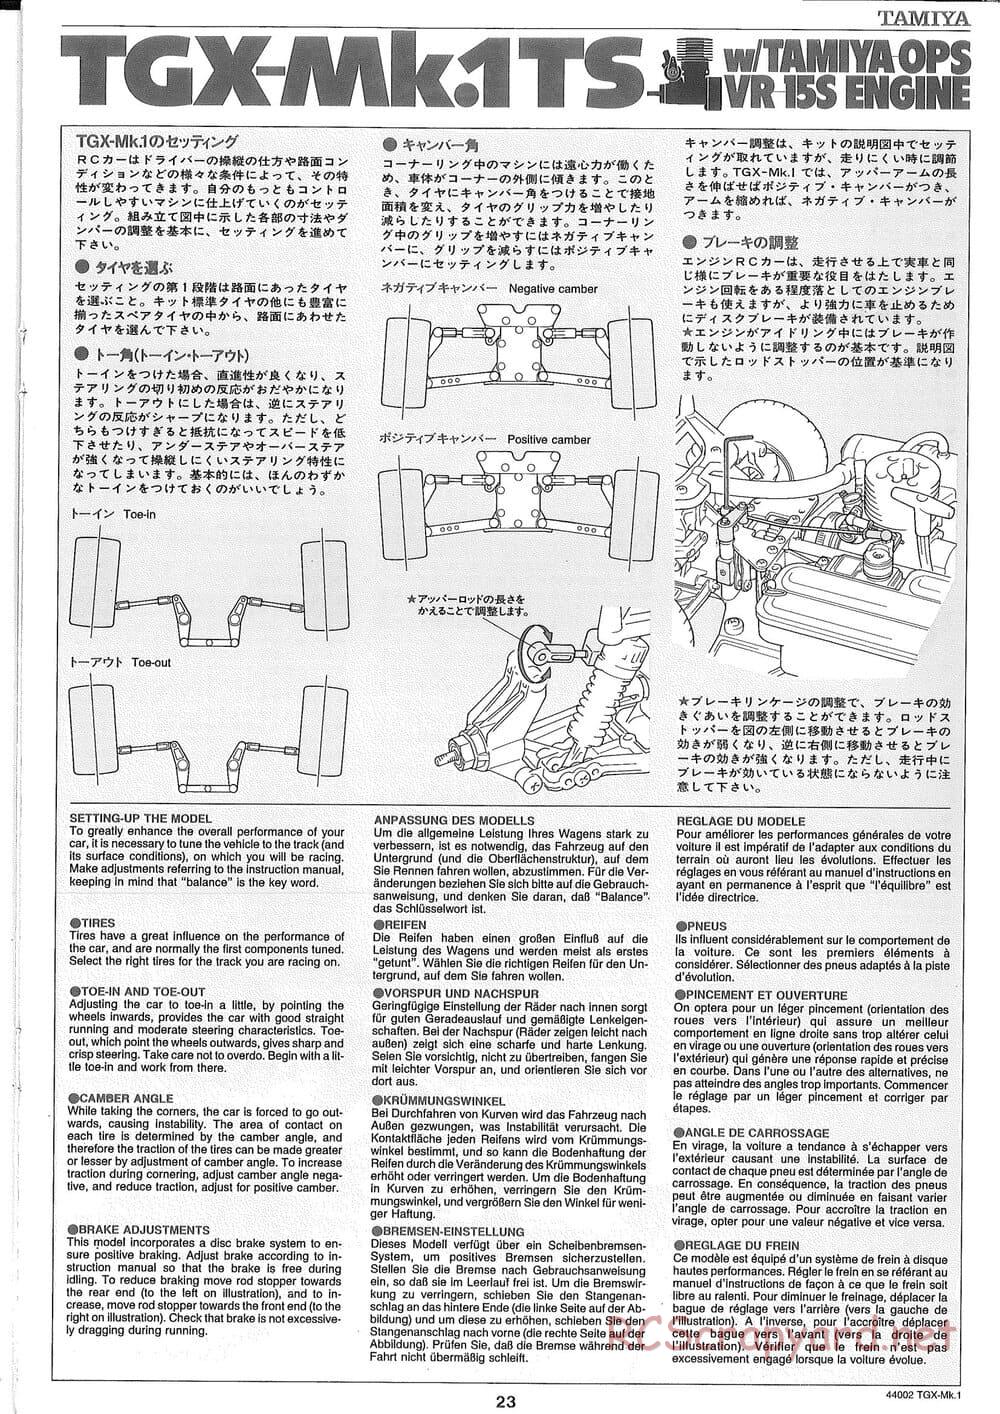 Tamiya - TGX Mk.1 TS Chassis Chassis - Manual - Page 23